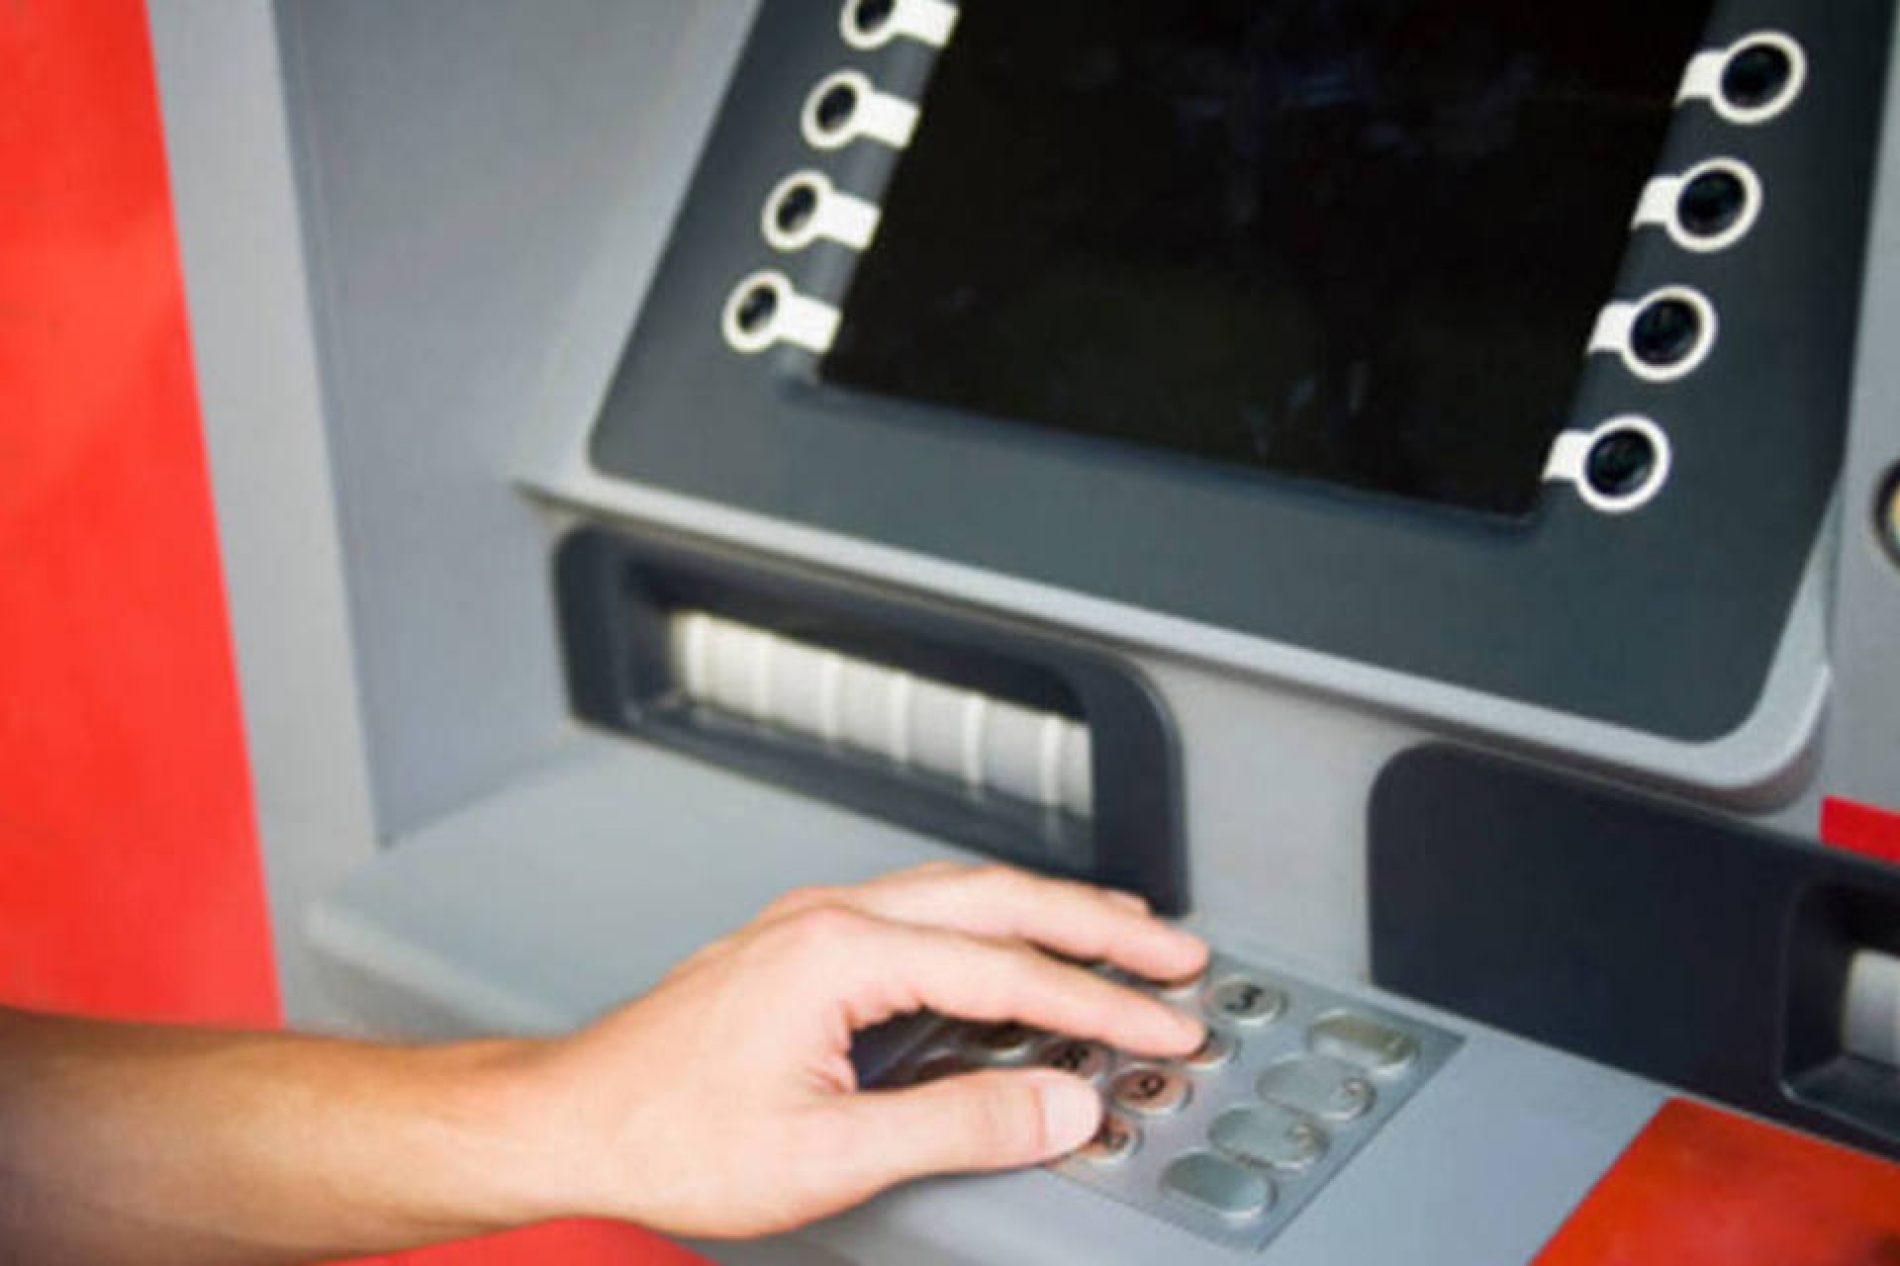 BARRETOS: Ladrões arrombam terminal eletrônico dentro de agência bancária